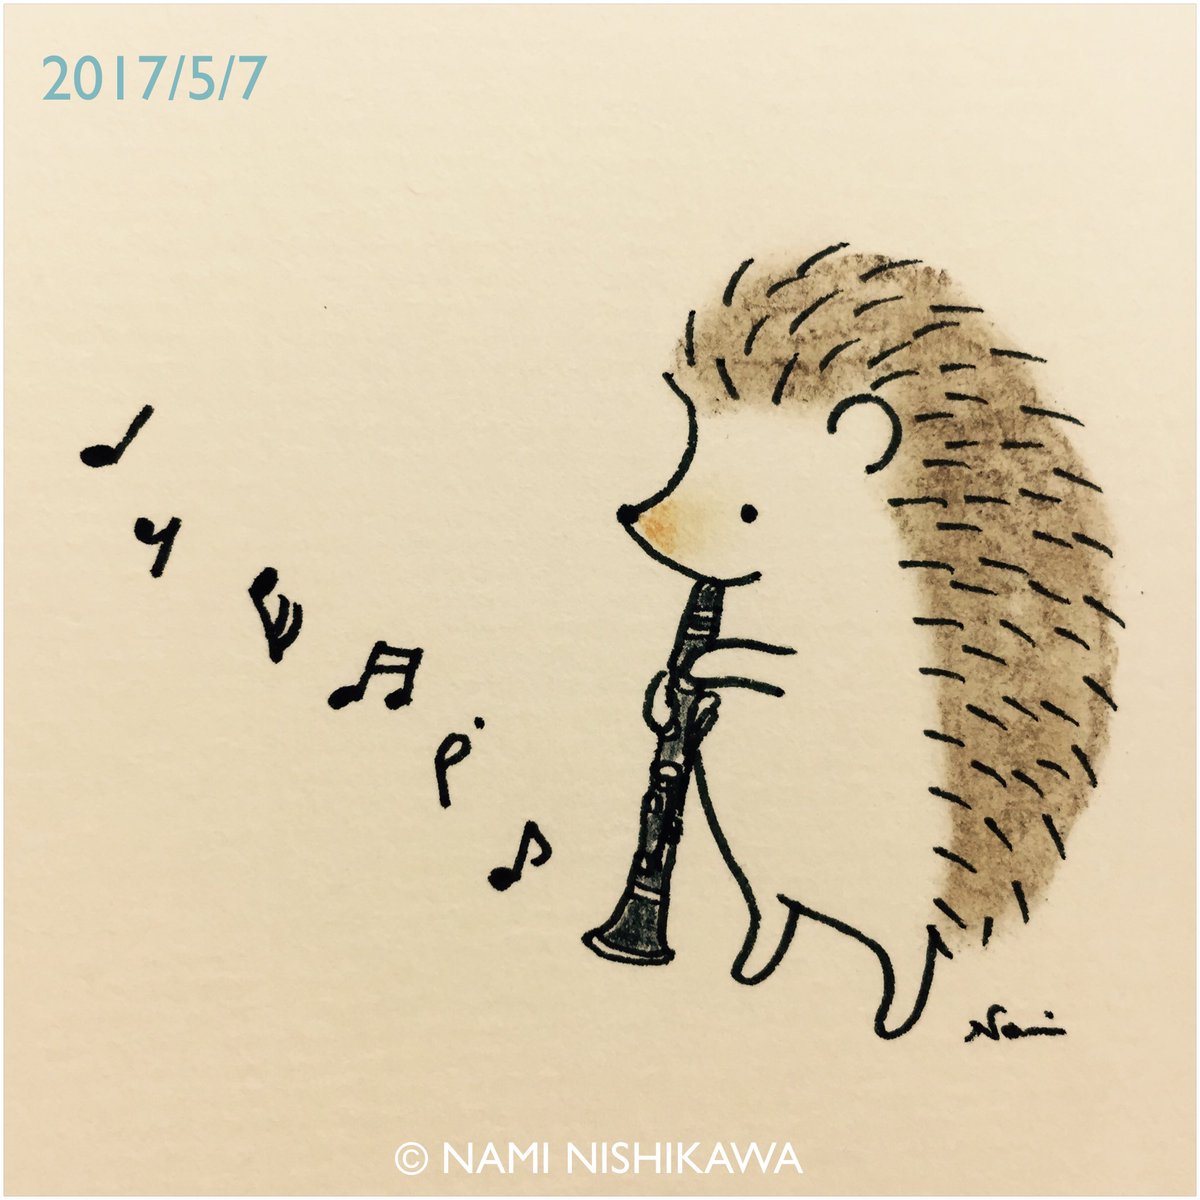 にしかわなみ なみはりねずみ 1169 クラリネット Clarinet Illustration Hedgehog Orchestra イラスト ハリネズミ オーケストラ なみはりねずみ